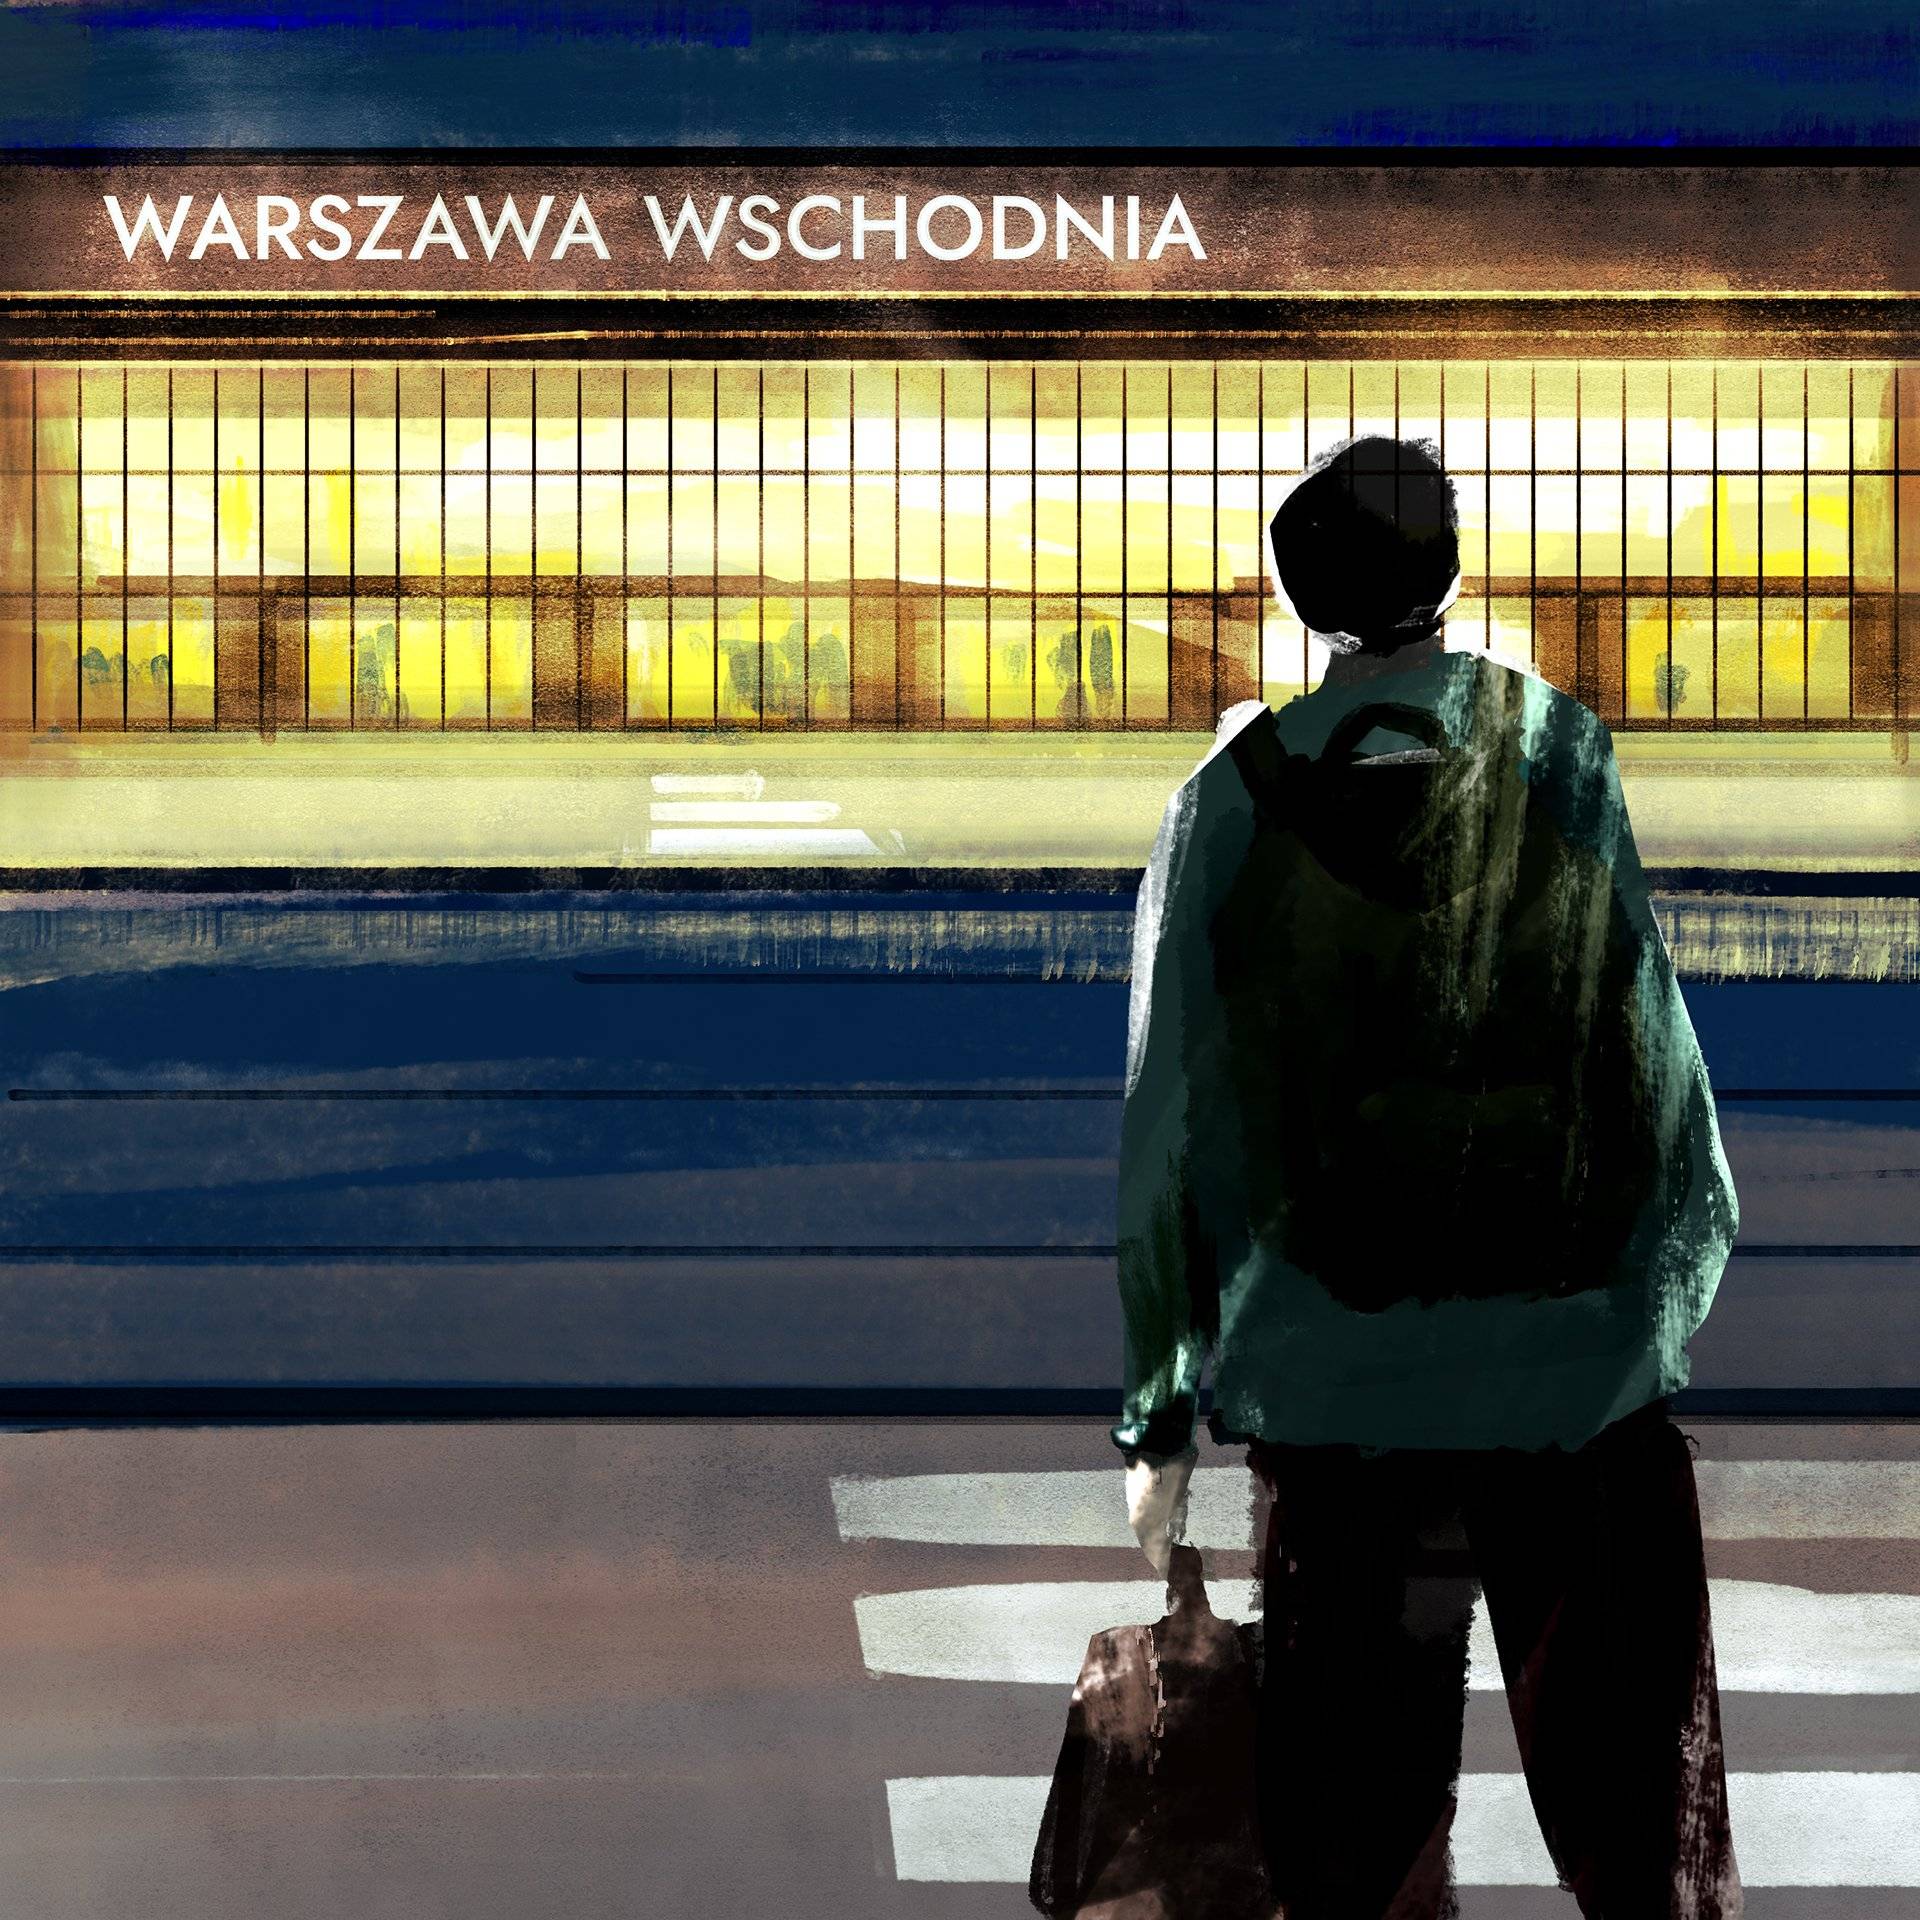 Ilustracja w stylu malarstwa cyfrowego: postać z plecakiem i torbą stoi przed rozświetlonym budynkiem dworca z napisem Warszawa Wschodnia